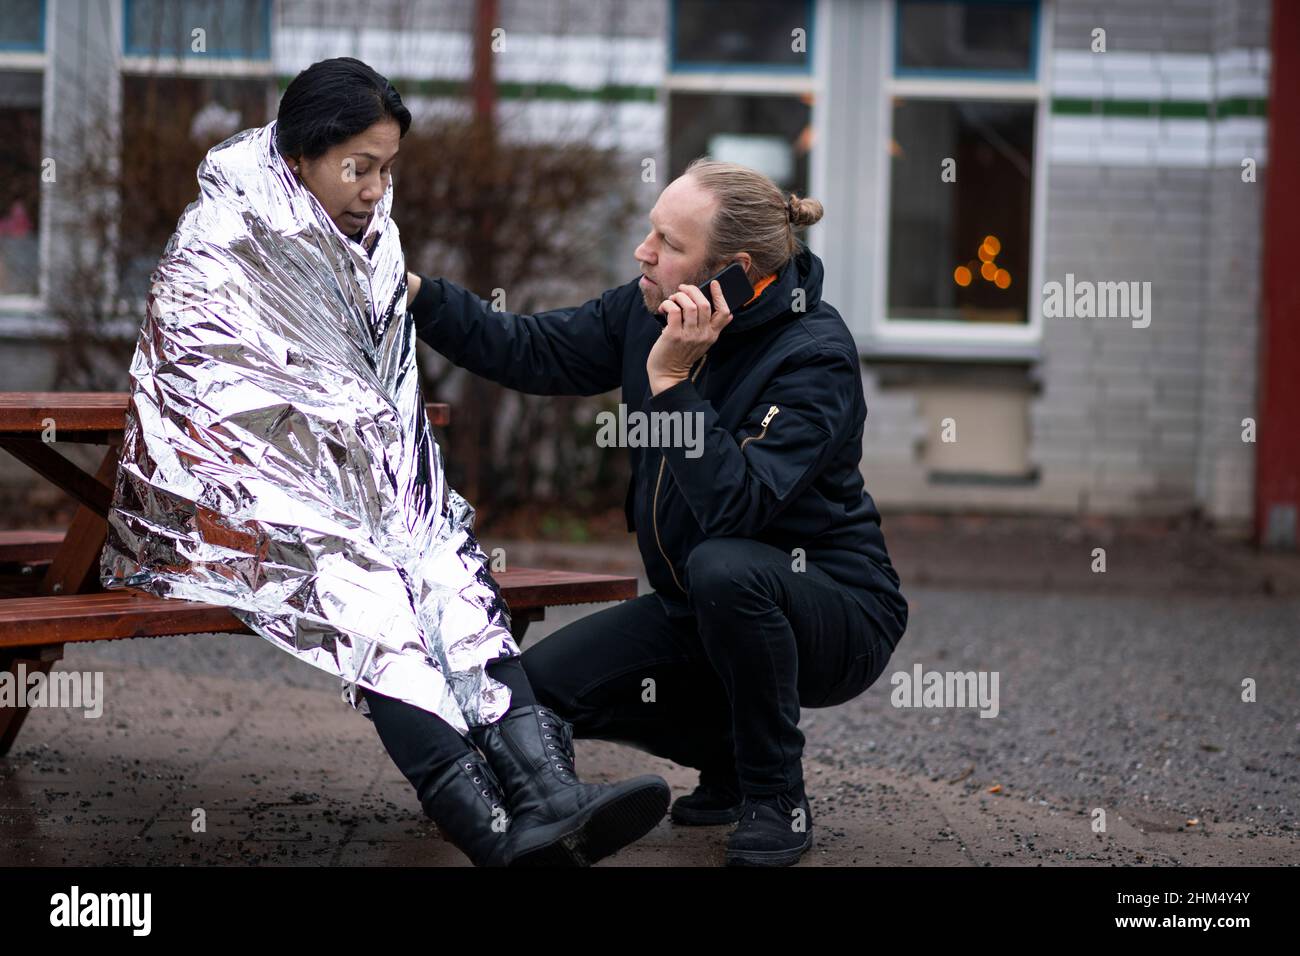 Uomo che chiede l'ambulanza per la donna in coperta di emergenza Foto Stock